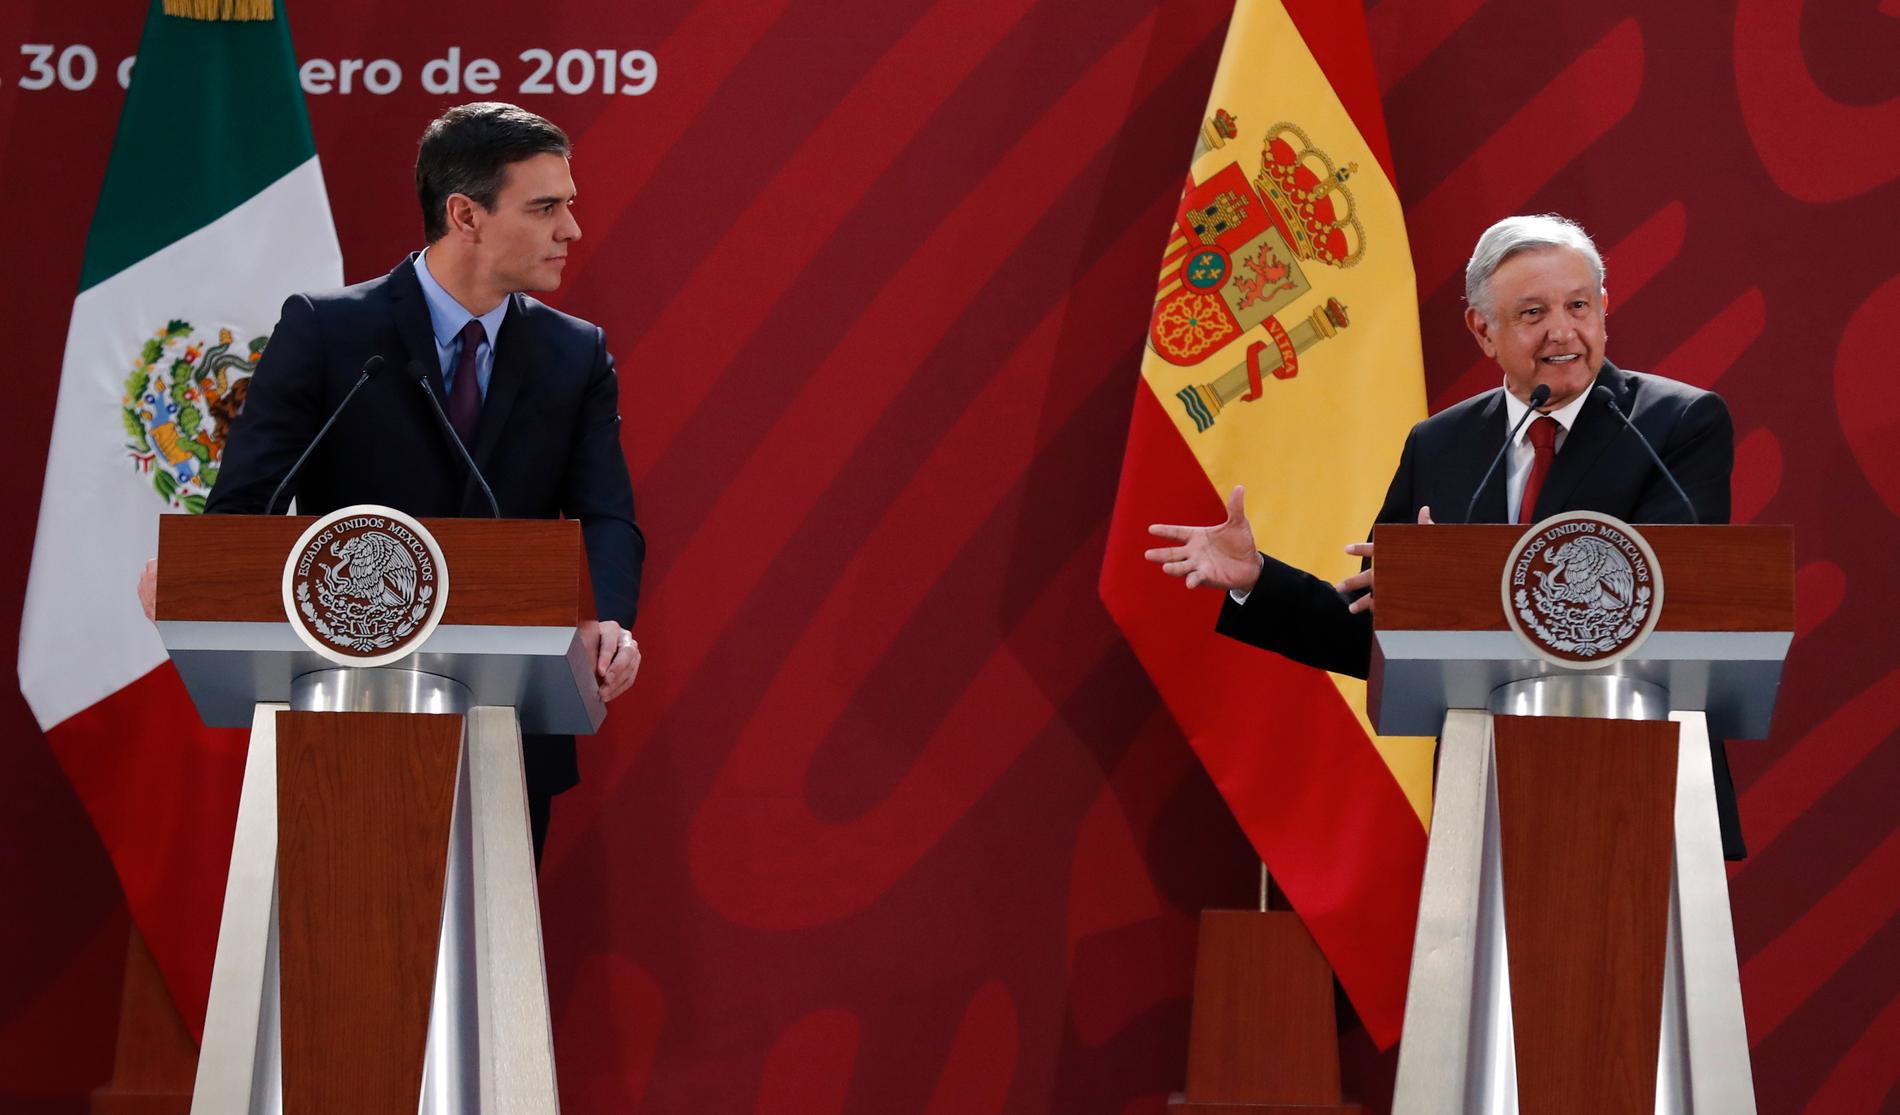 Pedro Sánchez och Andrés Manuel López Obrador på en gemensam presskonferens under den förstnämndes besök i Mexiko.